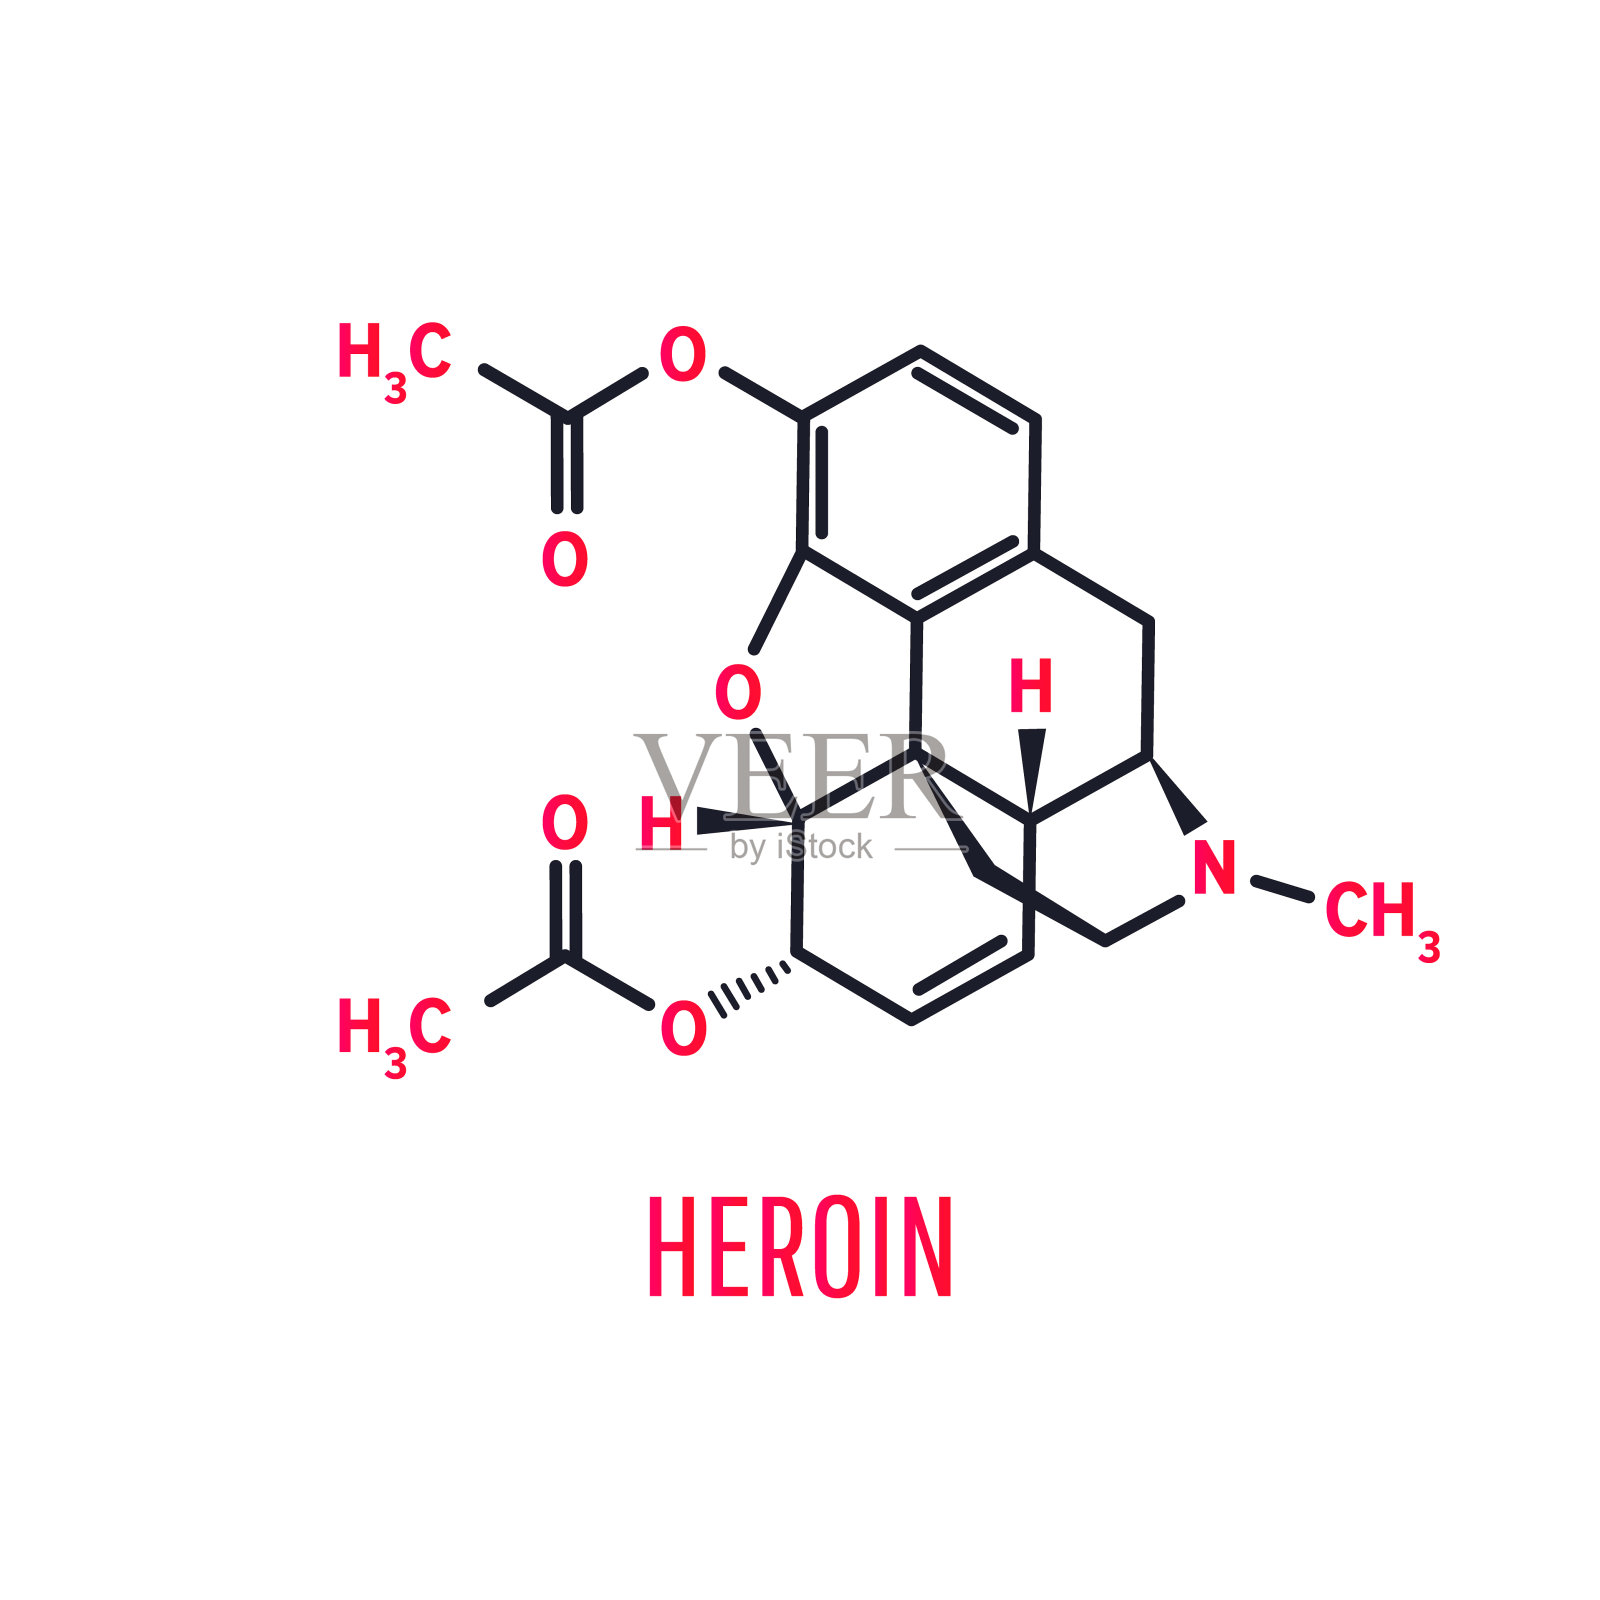 海洛因为什么能成为“毒品之王”？它的危害到底有多大？ ＊ 阿波罗新闻网